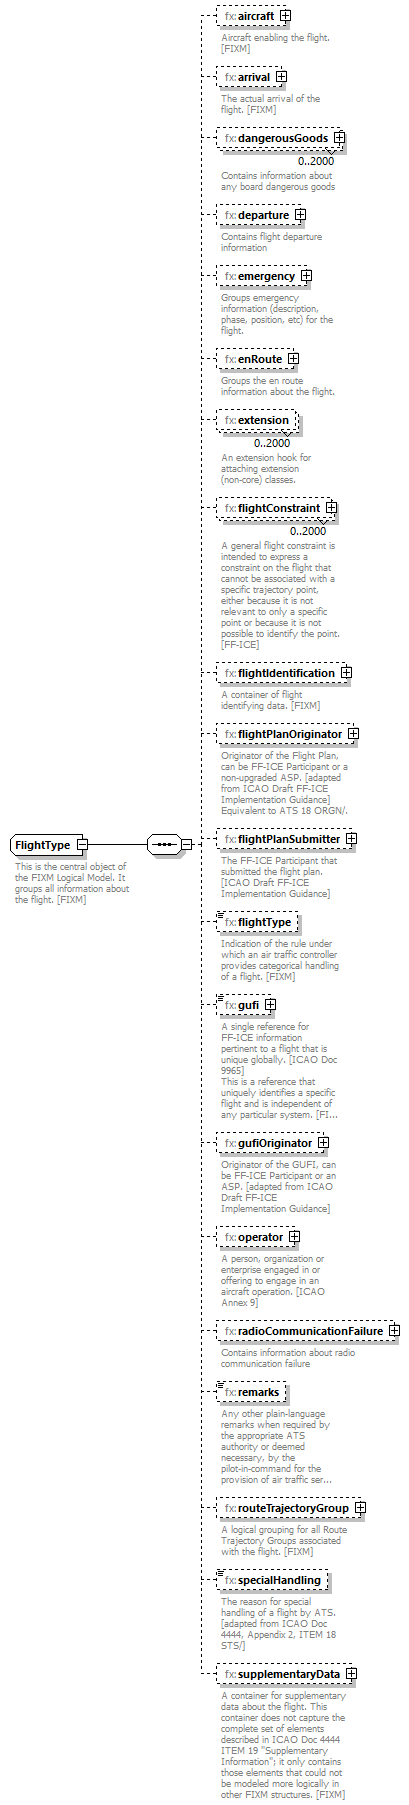 Fixm_diagrams/Fixm_p325.png